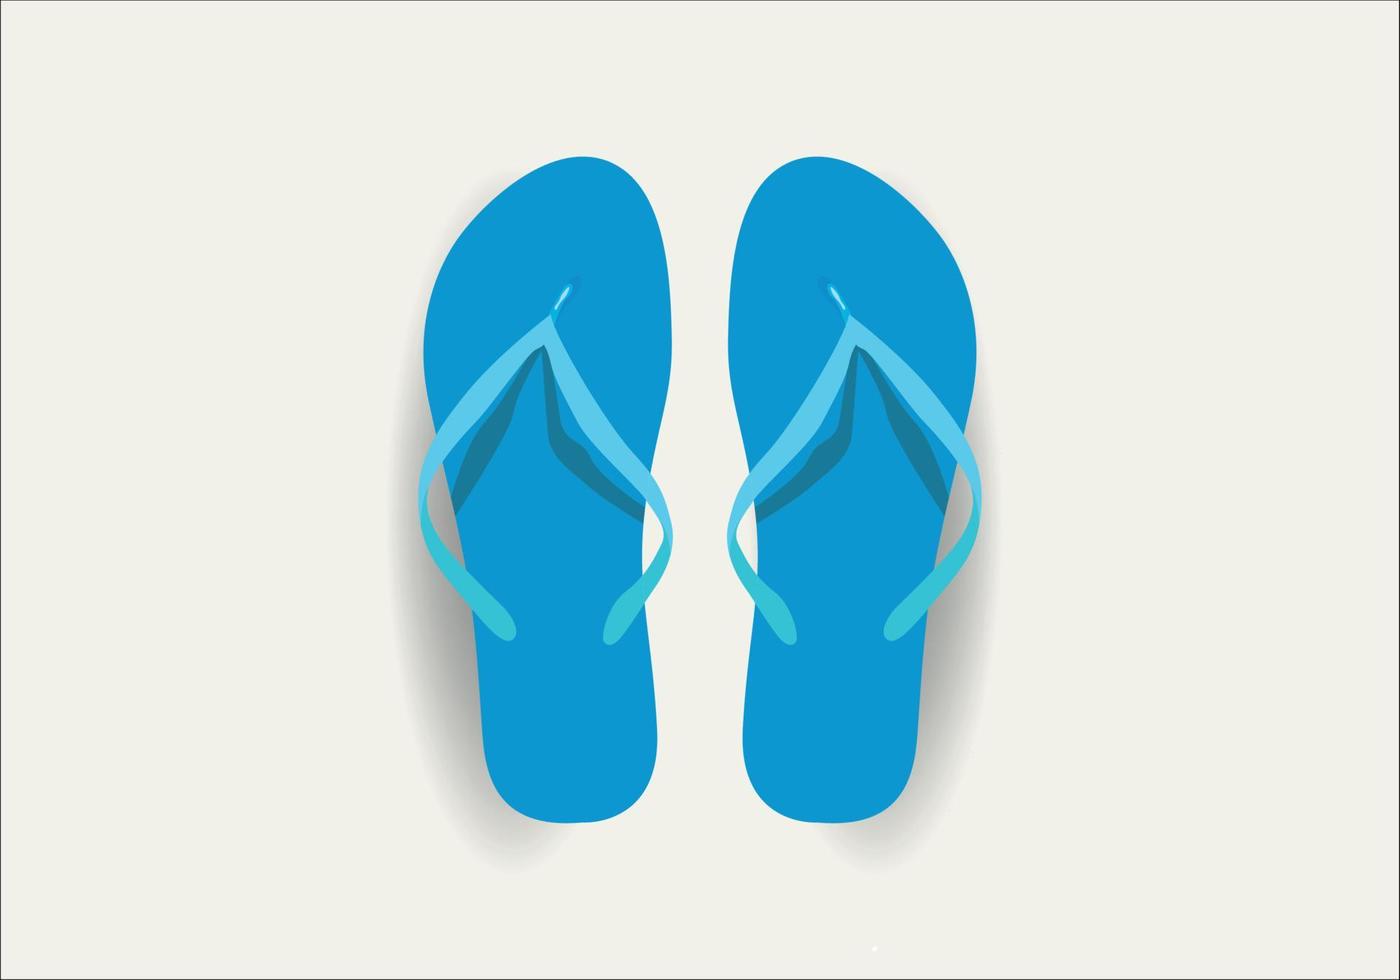 Flip flops on white background. Vector illustration in trendy flat style. Vector Flip Flops design for summer.